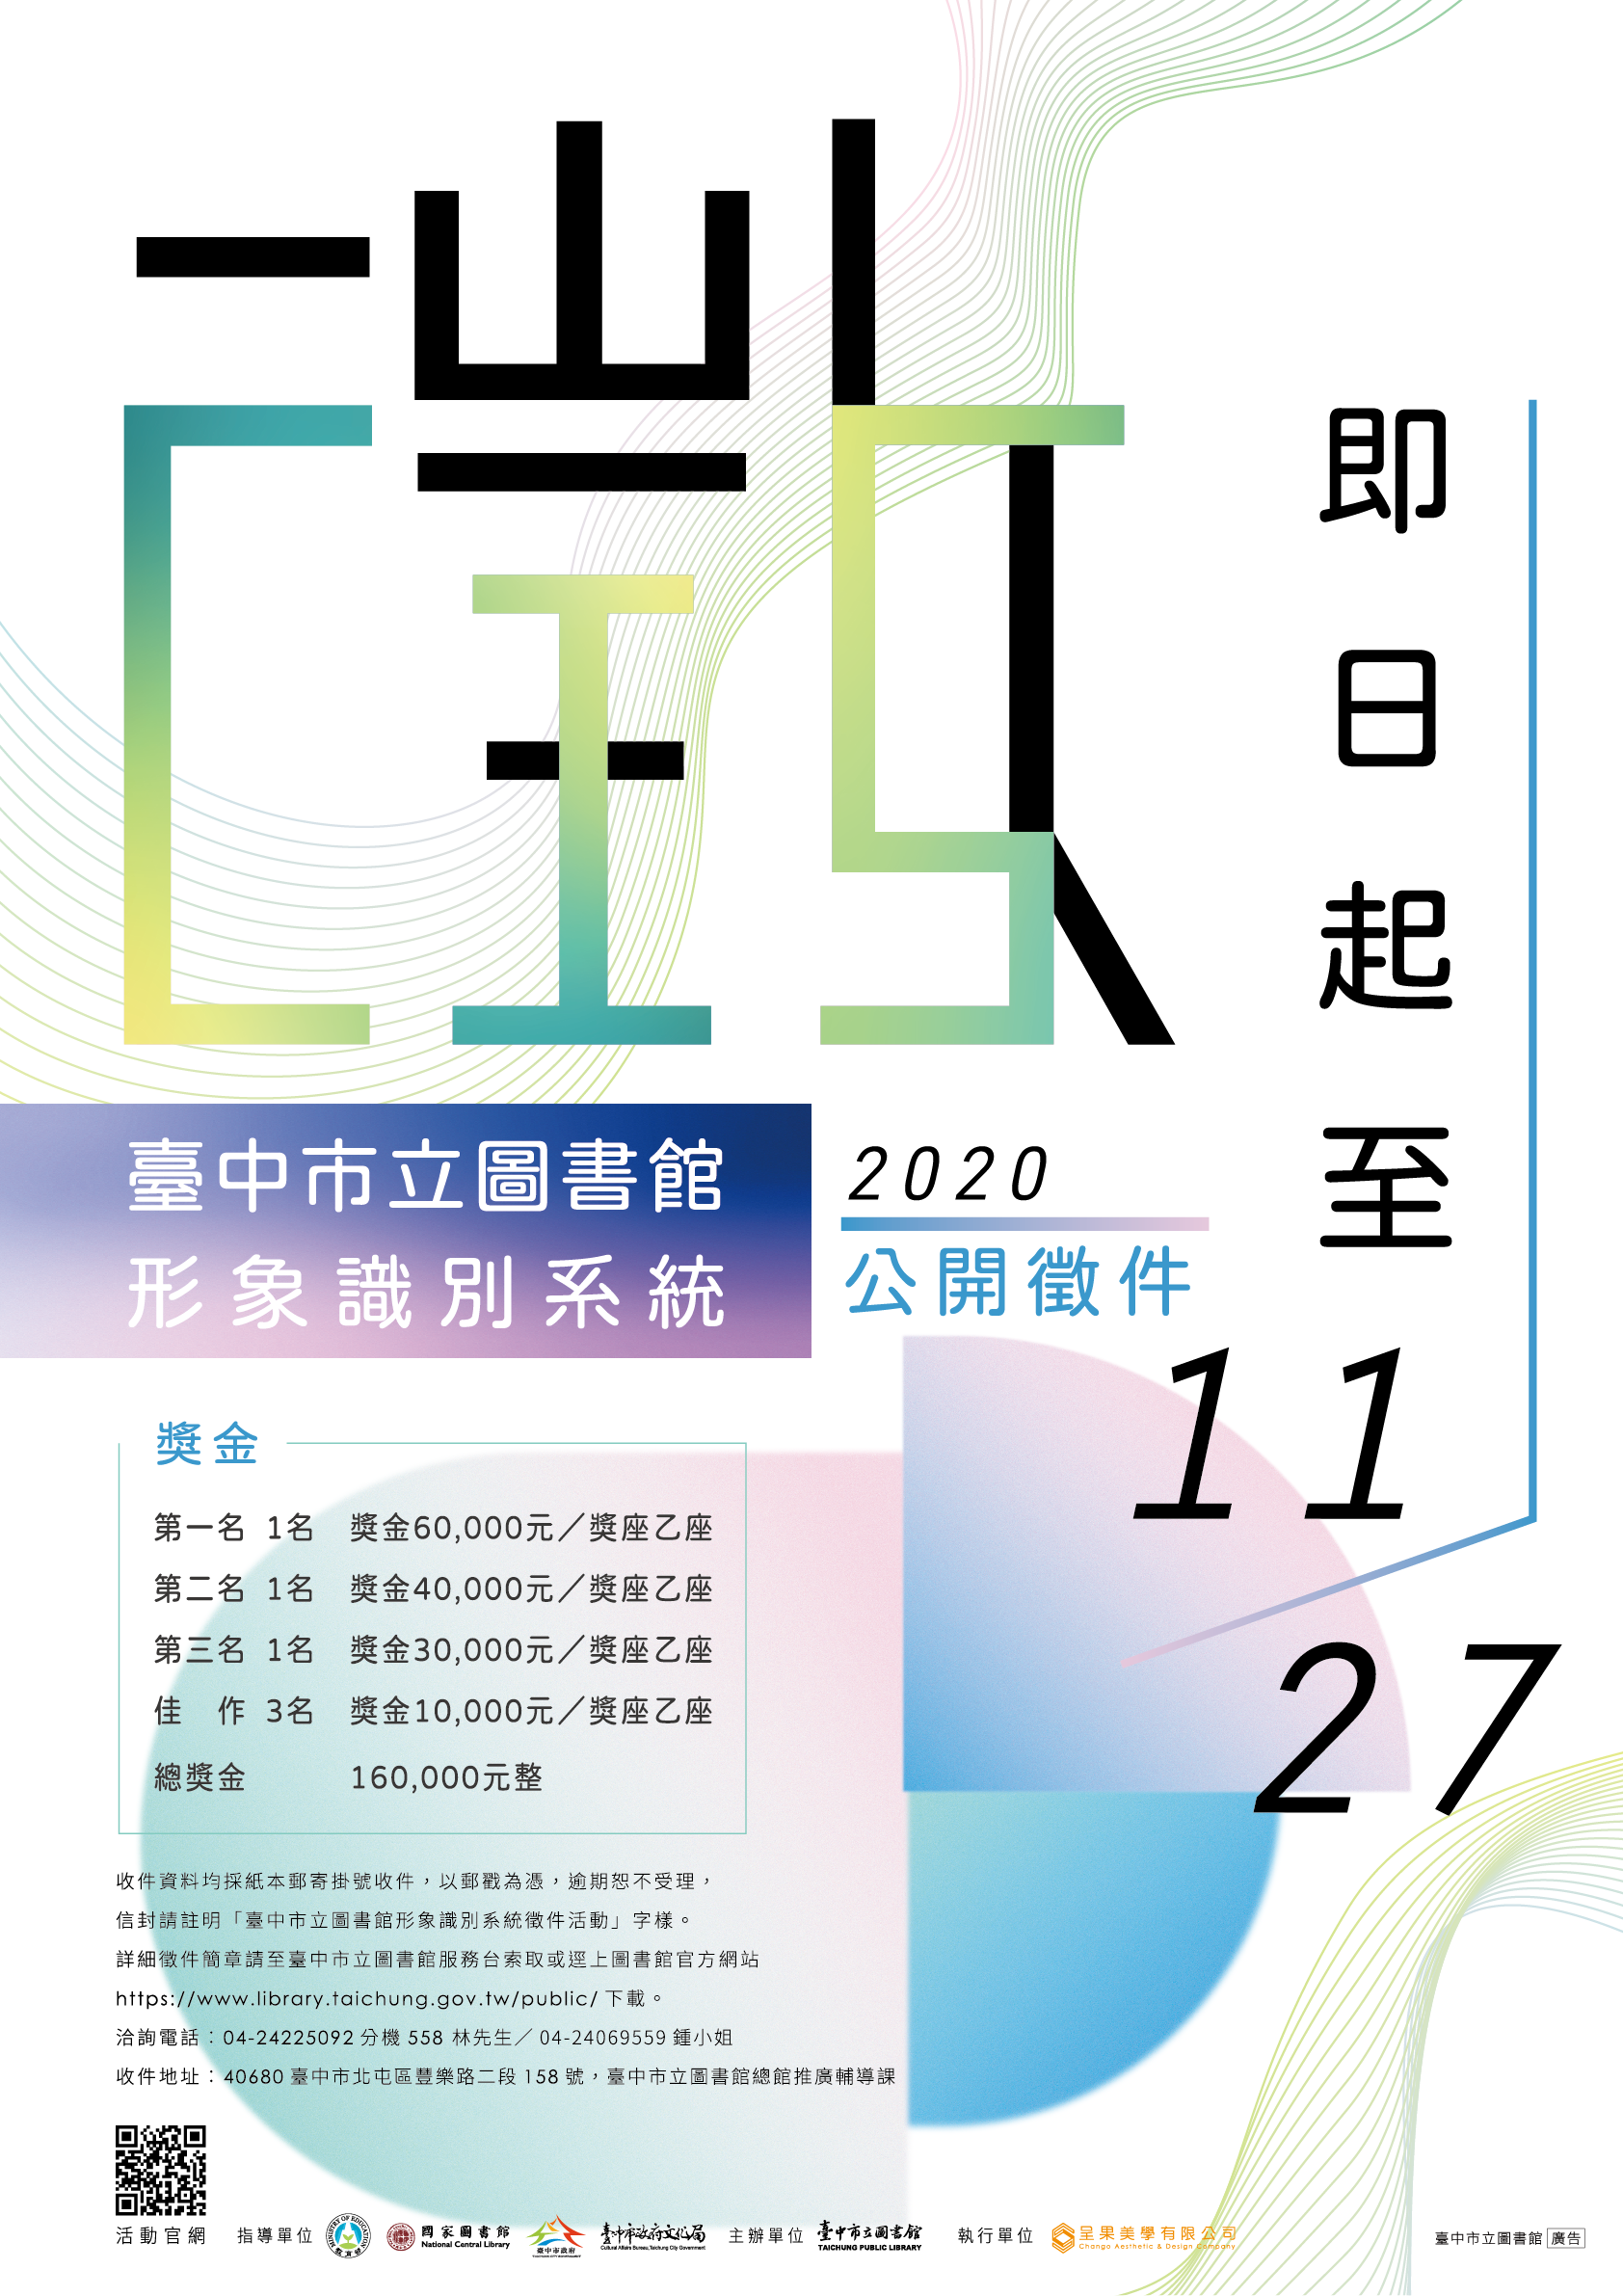 臺中市立圖書館 形象識別系統CIS徵件活動海報